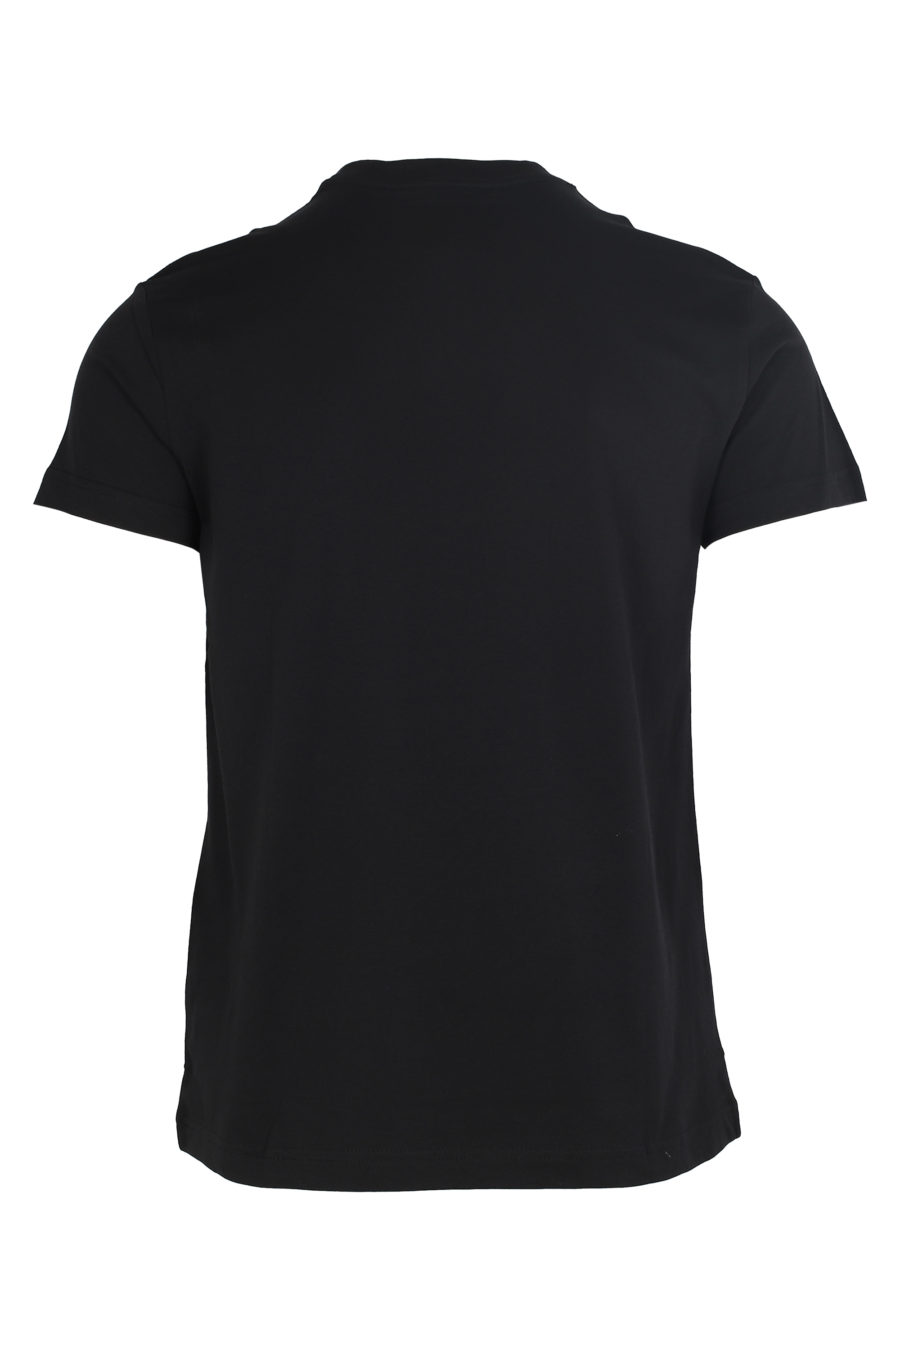 T-shirt noir avec logo caoutchouté gris - IMG 5991